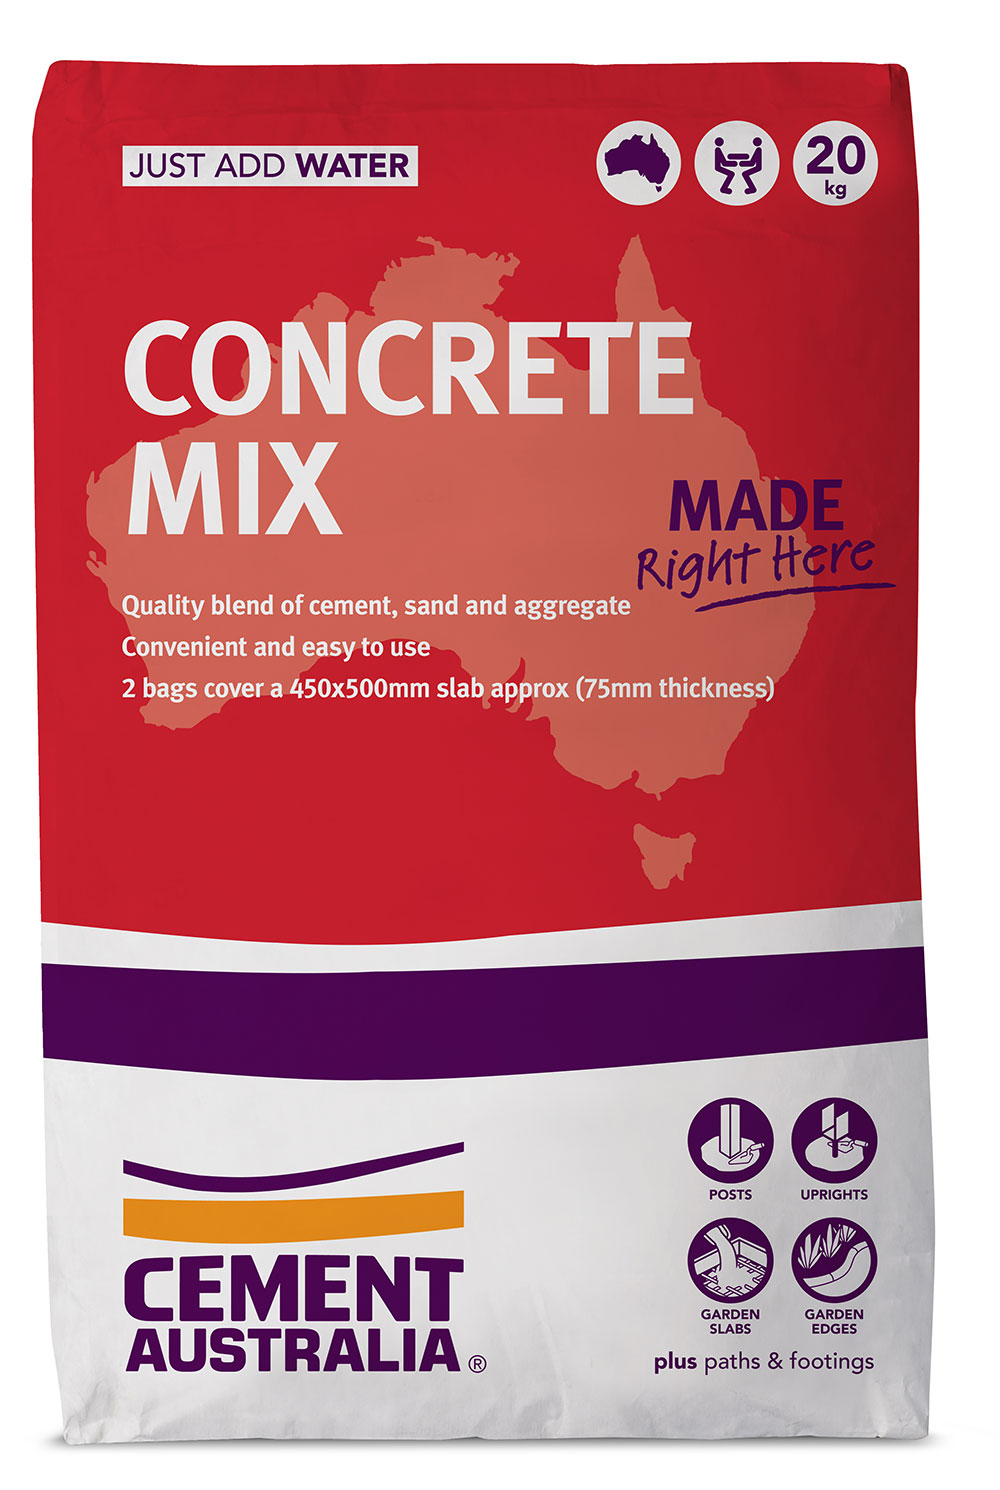 Product Concrete Mix